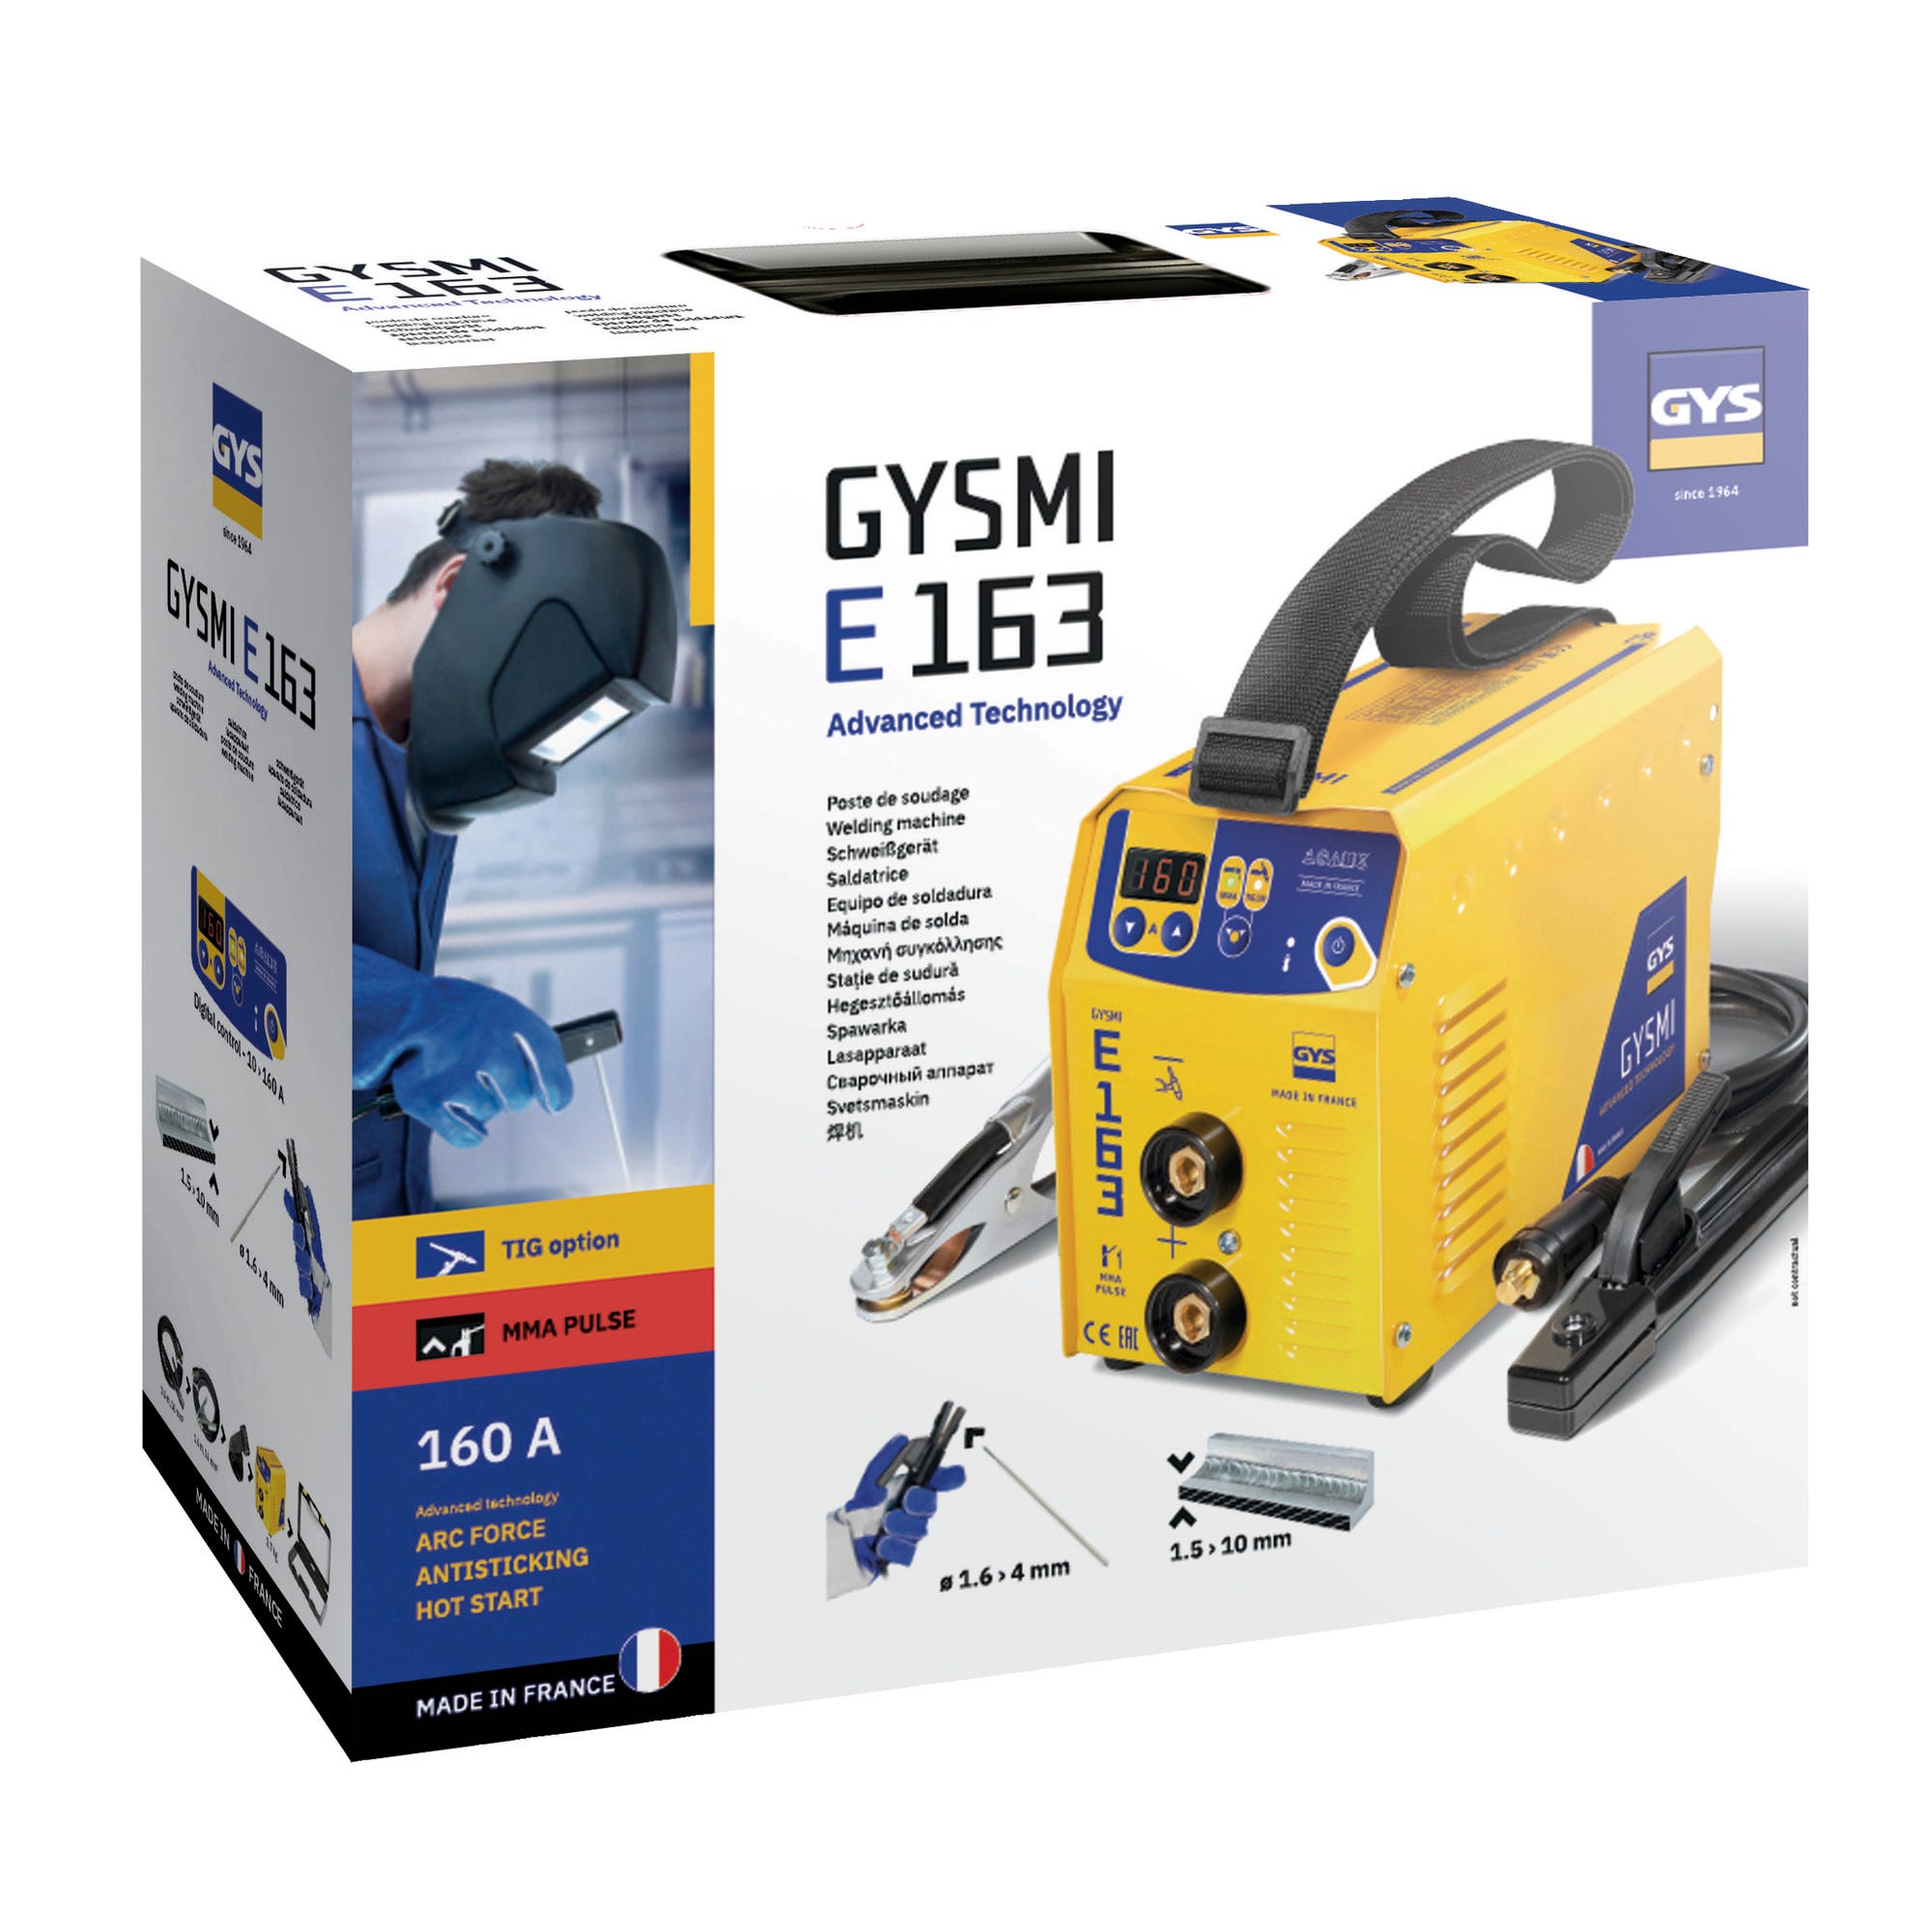 Poste de soudure Gysmi E163 avec valise et accessoires - GYS 2